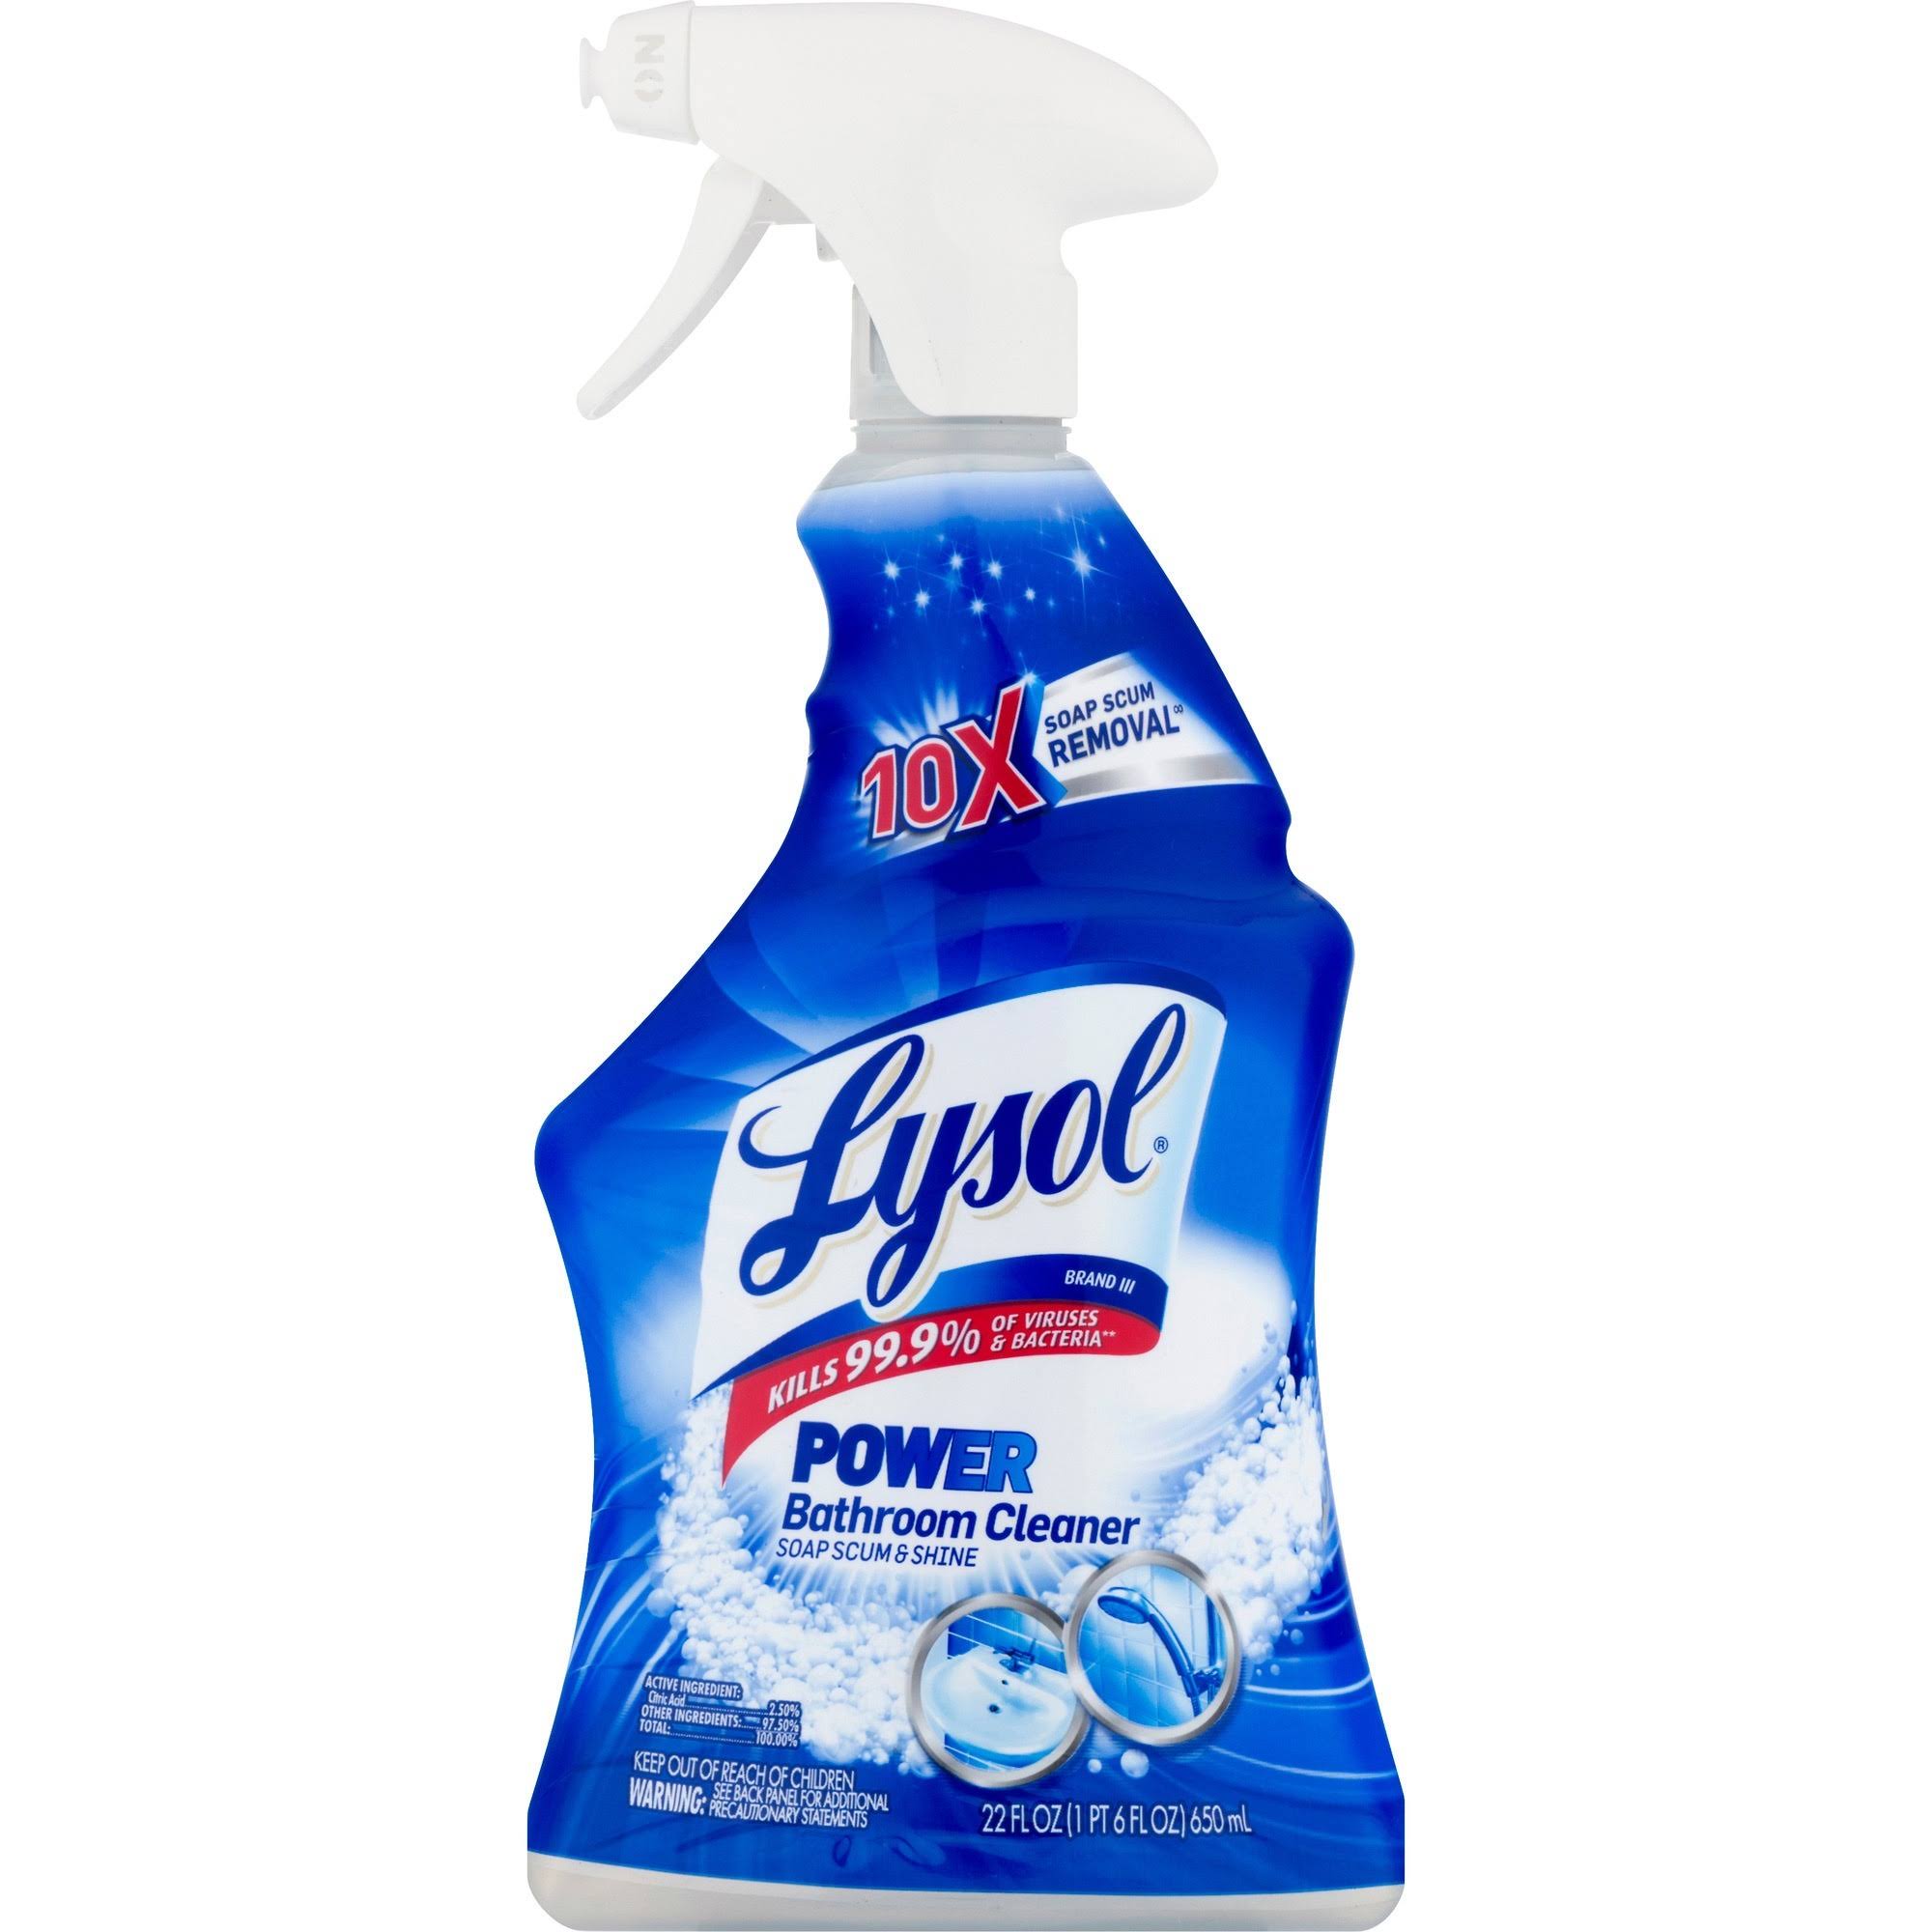 Lysol Bathroom Cleaner - Spray - 22 oz (1.37 lb) - Spray Bottle - 1 Each